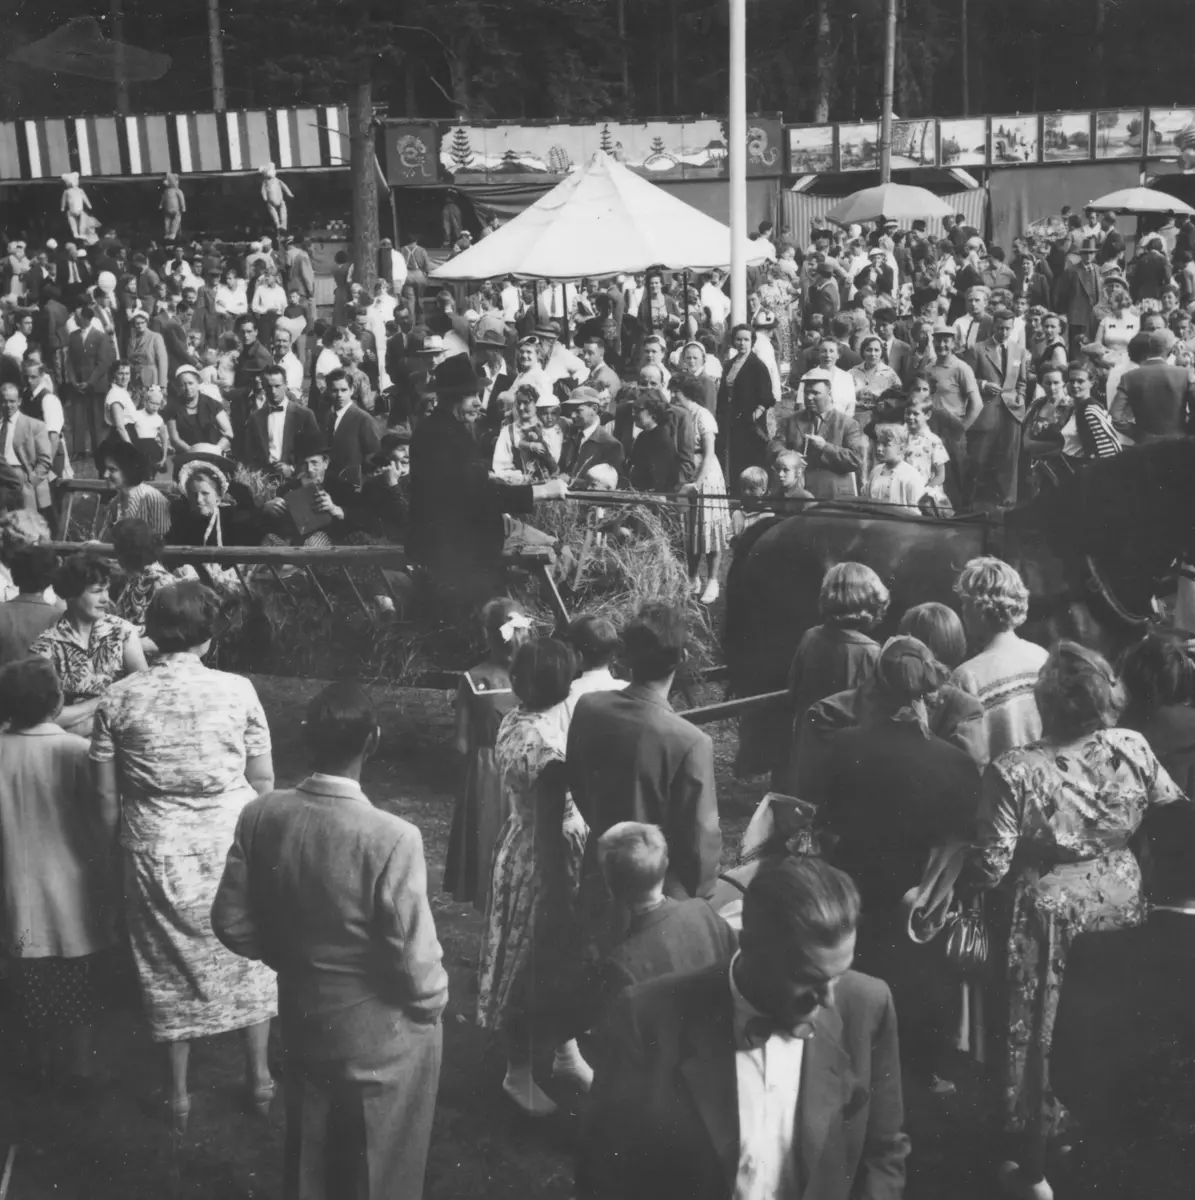 Turinge marknad 1956. Torparen har kommit fram till marknaden med sin höskrinda